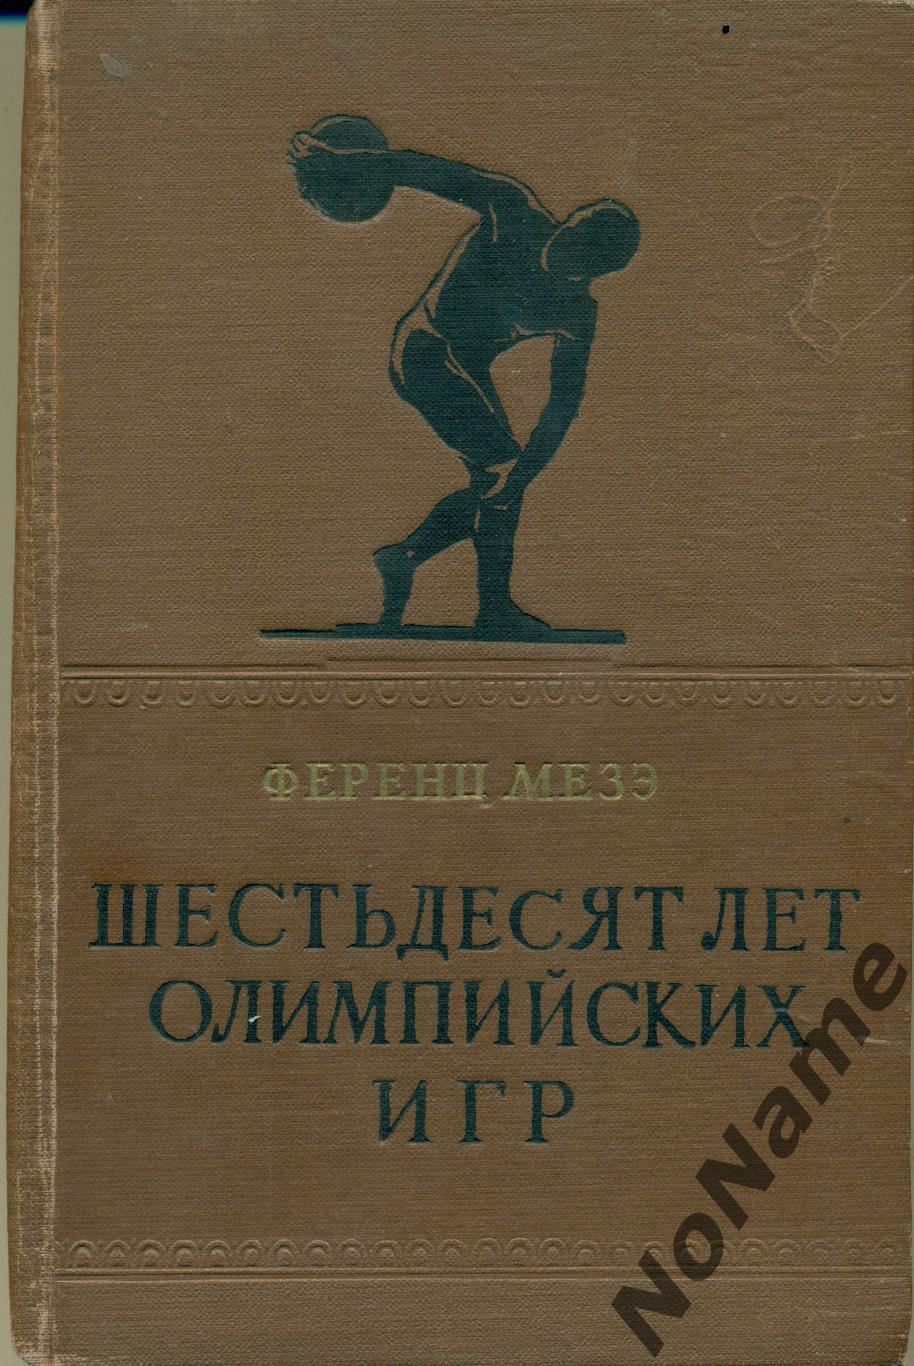 Ф. Мезэ Шестьдесят лет олимпийских Игр, ФиС 1959 г., 390 стр.